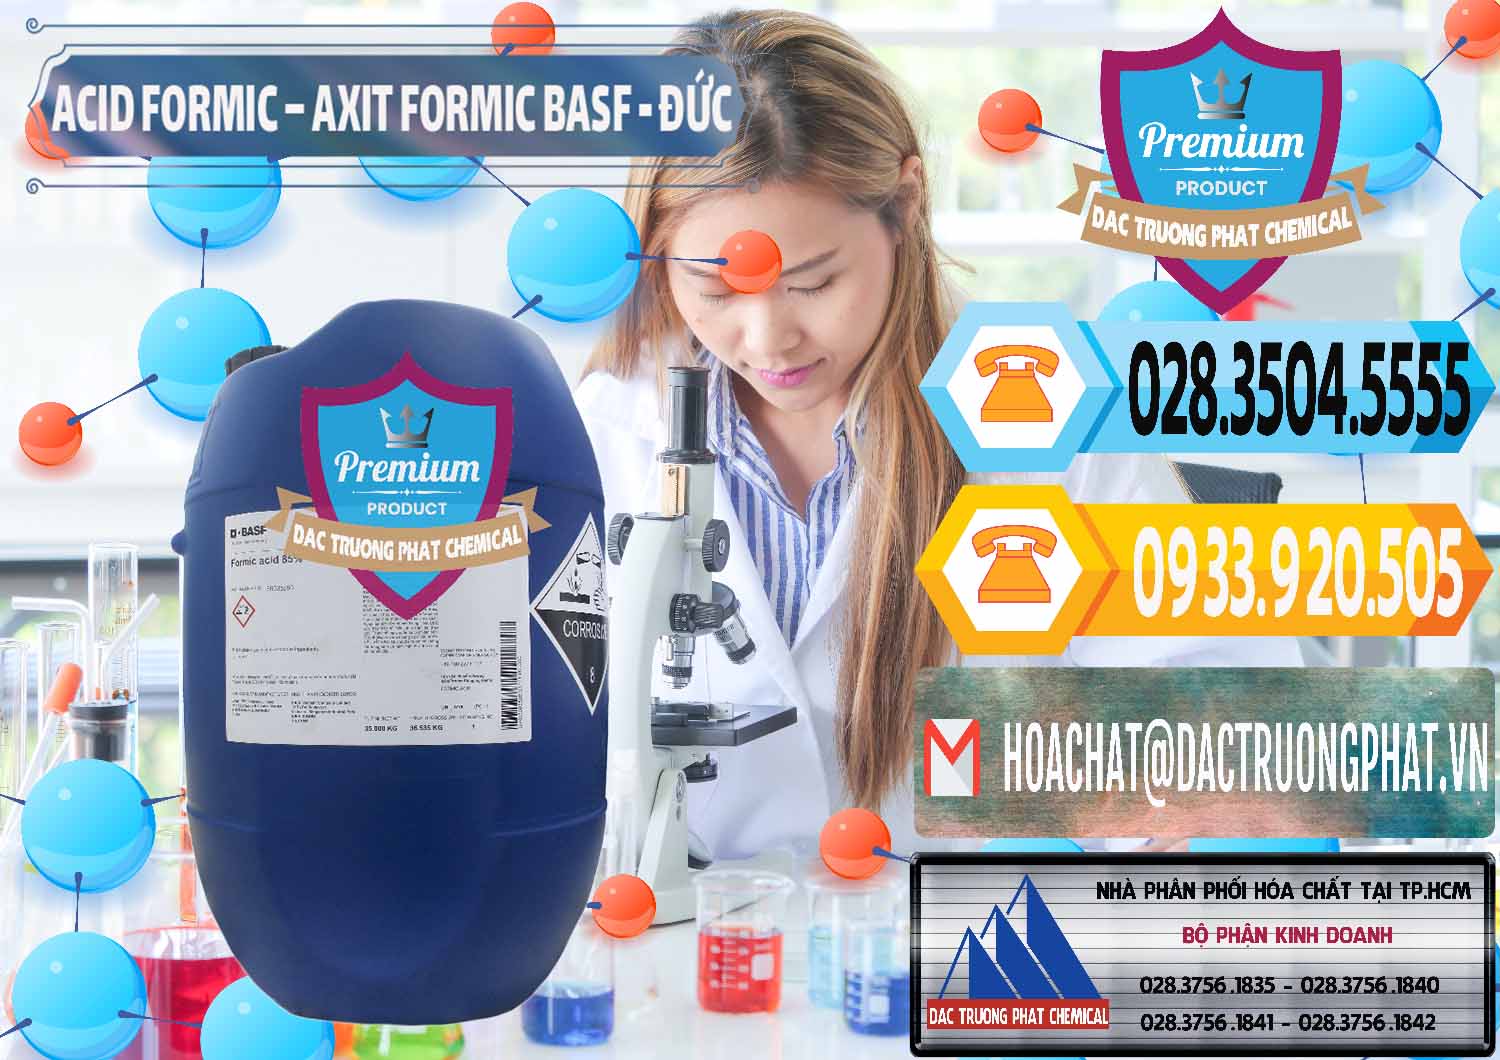 Nơi phân phối và bán Acid Formic - Axit Formic BASF Đức Germany - 0028 - Cung cấp _ kinh doanh hóa chất tại TP.HCM - hoachattayrua.net